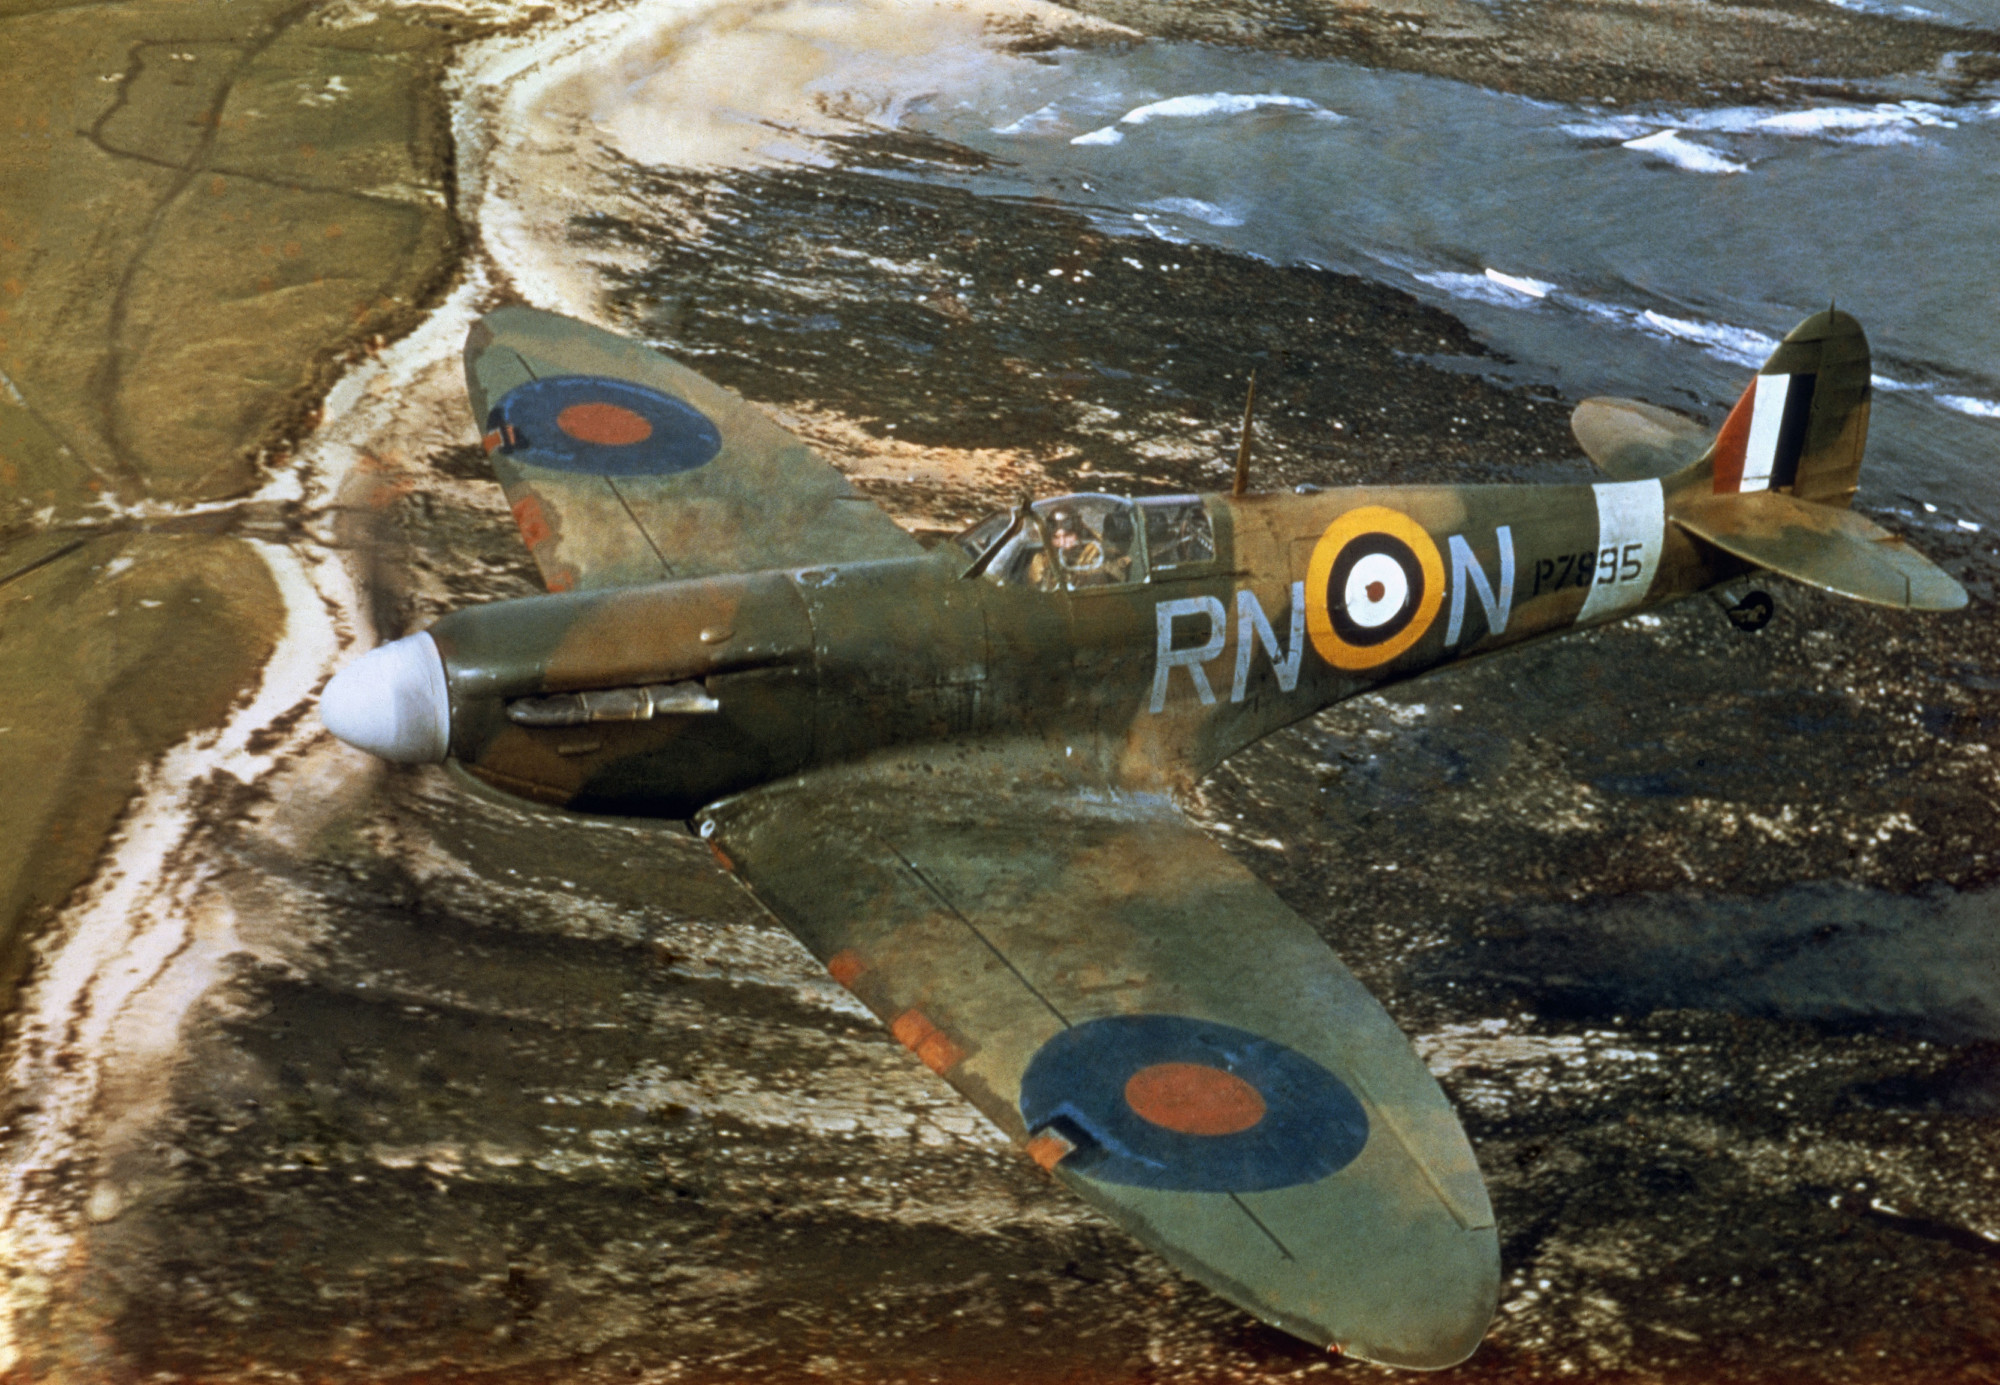 Lezuhant a brit légierő egyik második világháborús vadászrepülőgépe